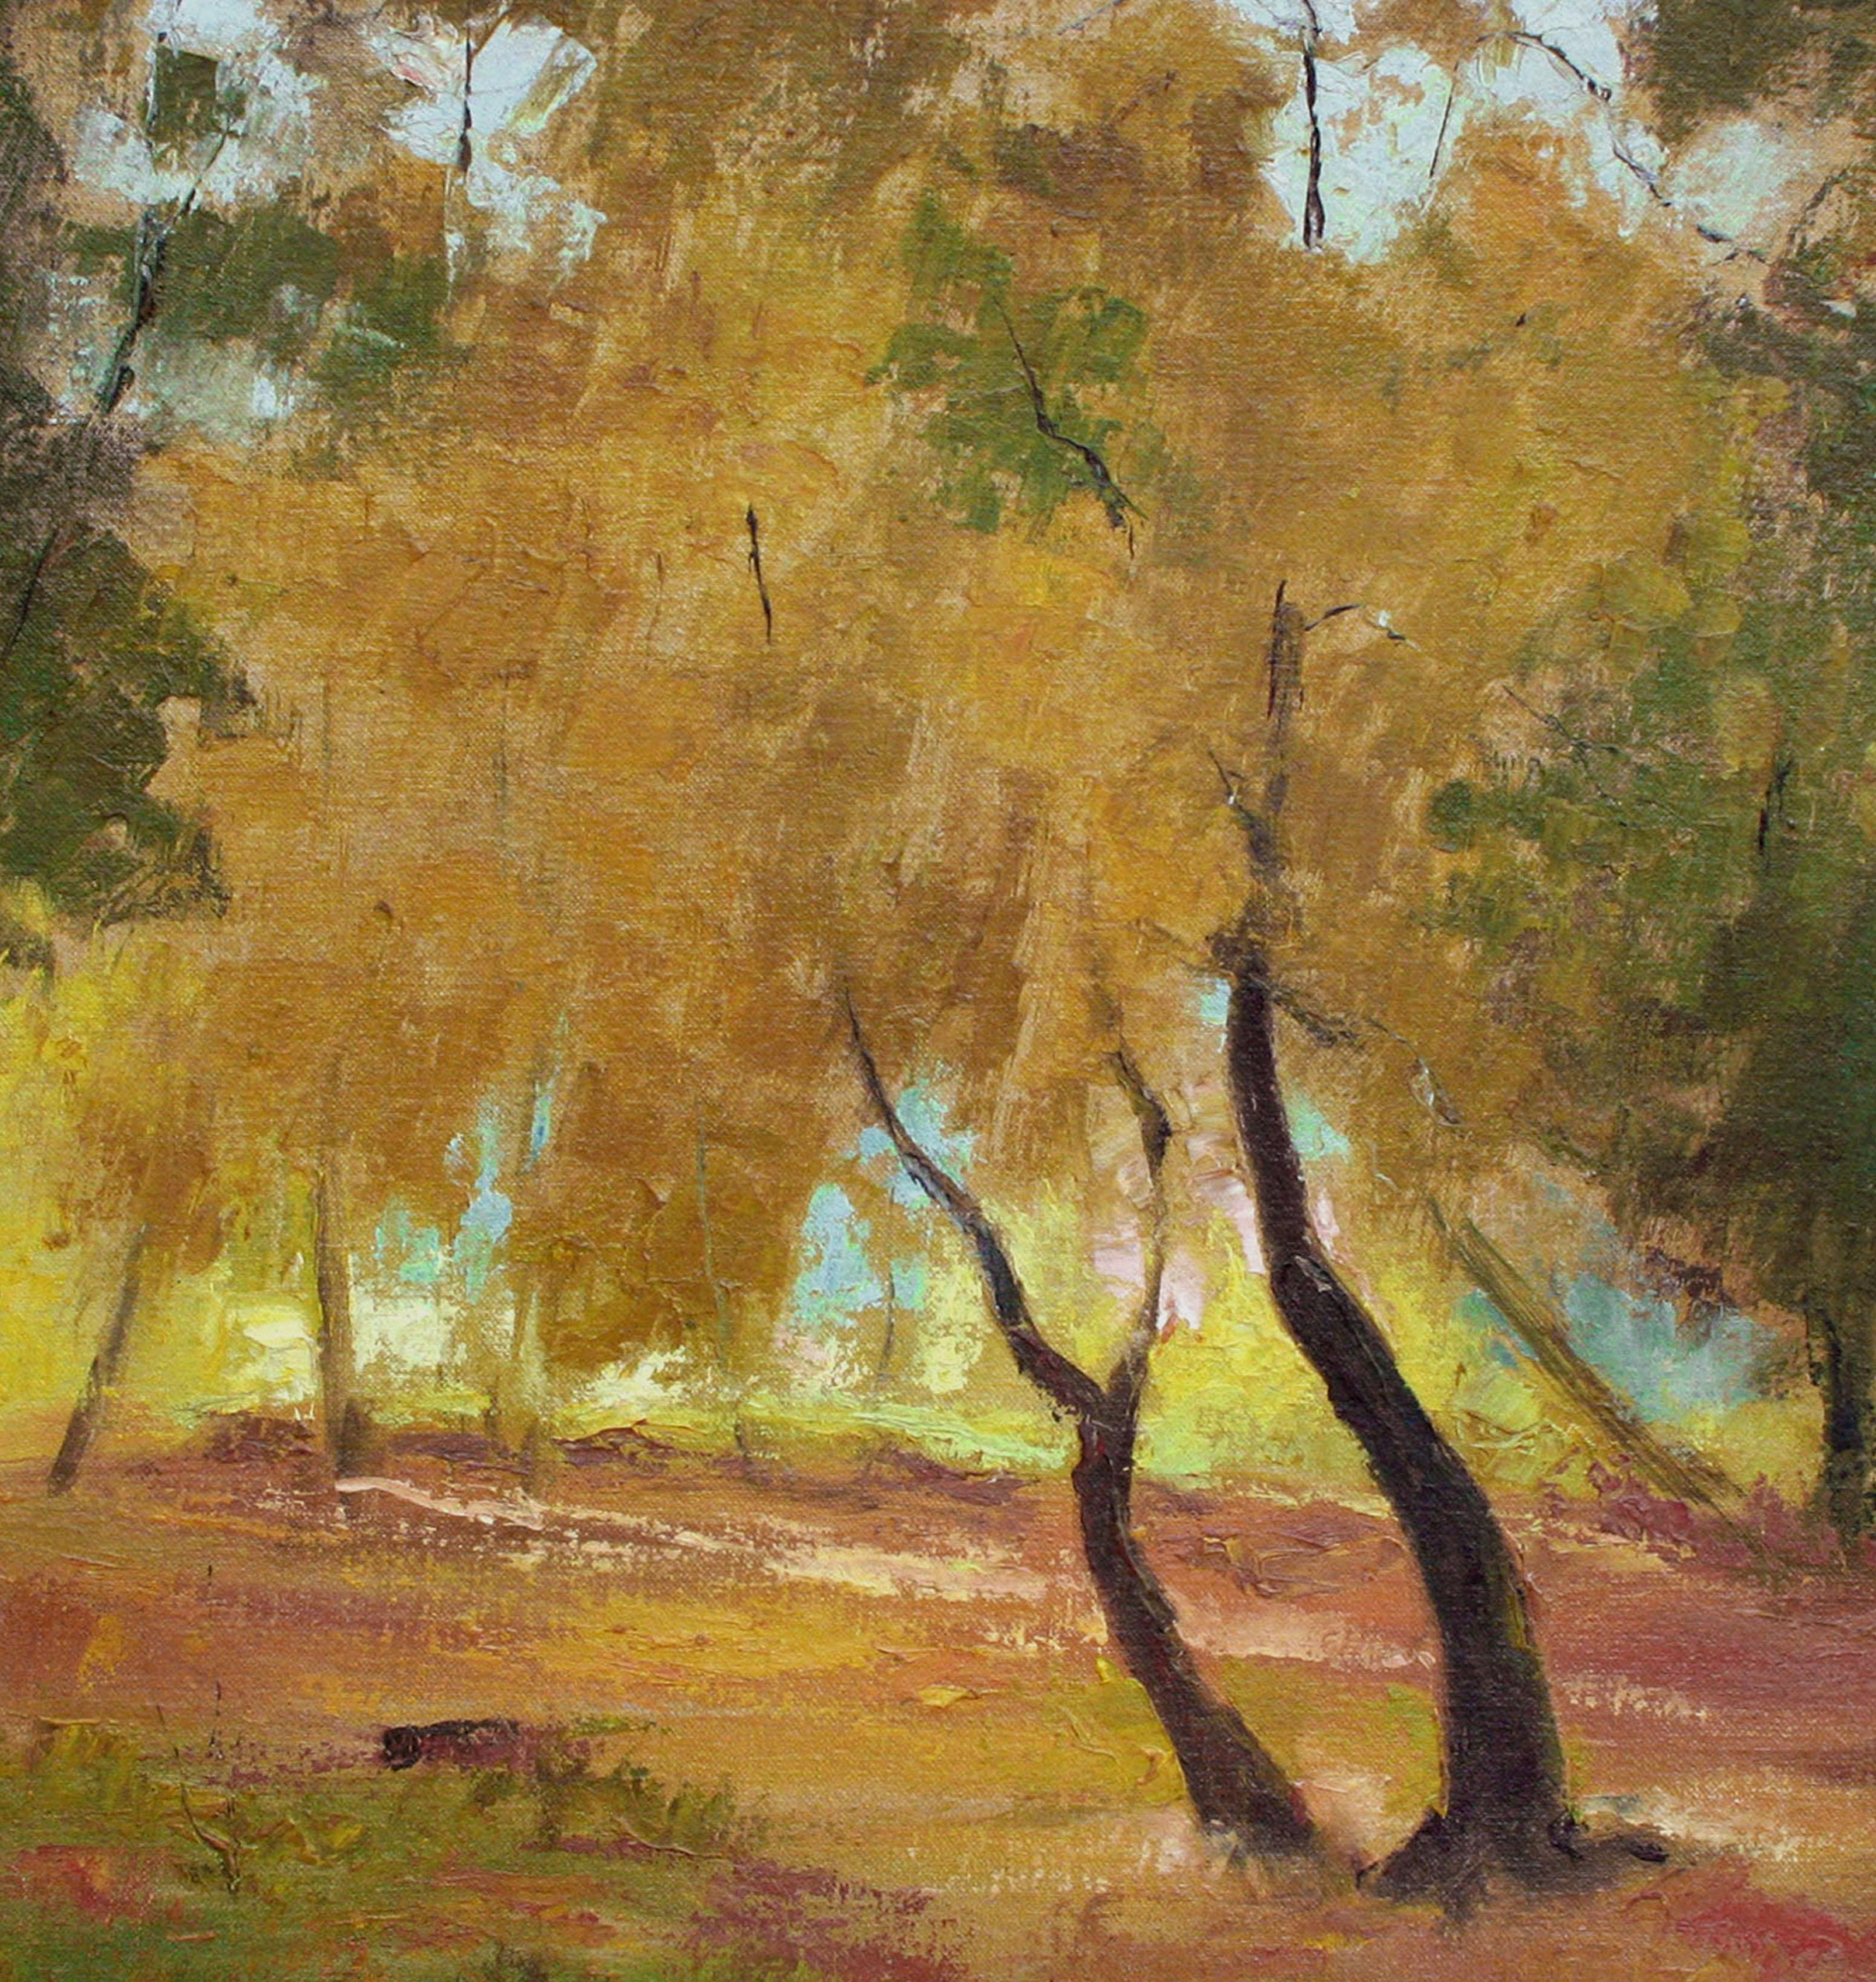 Árboles de otoño, paisaje otoñal de mediados de siglo con tonos naranjas y tierra - Painting impresionista estadounidense de Jon Blanchette